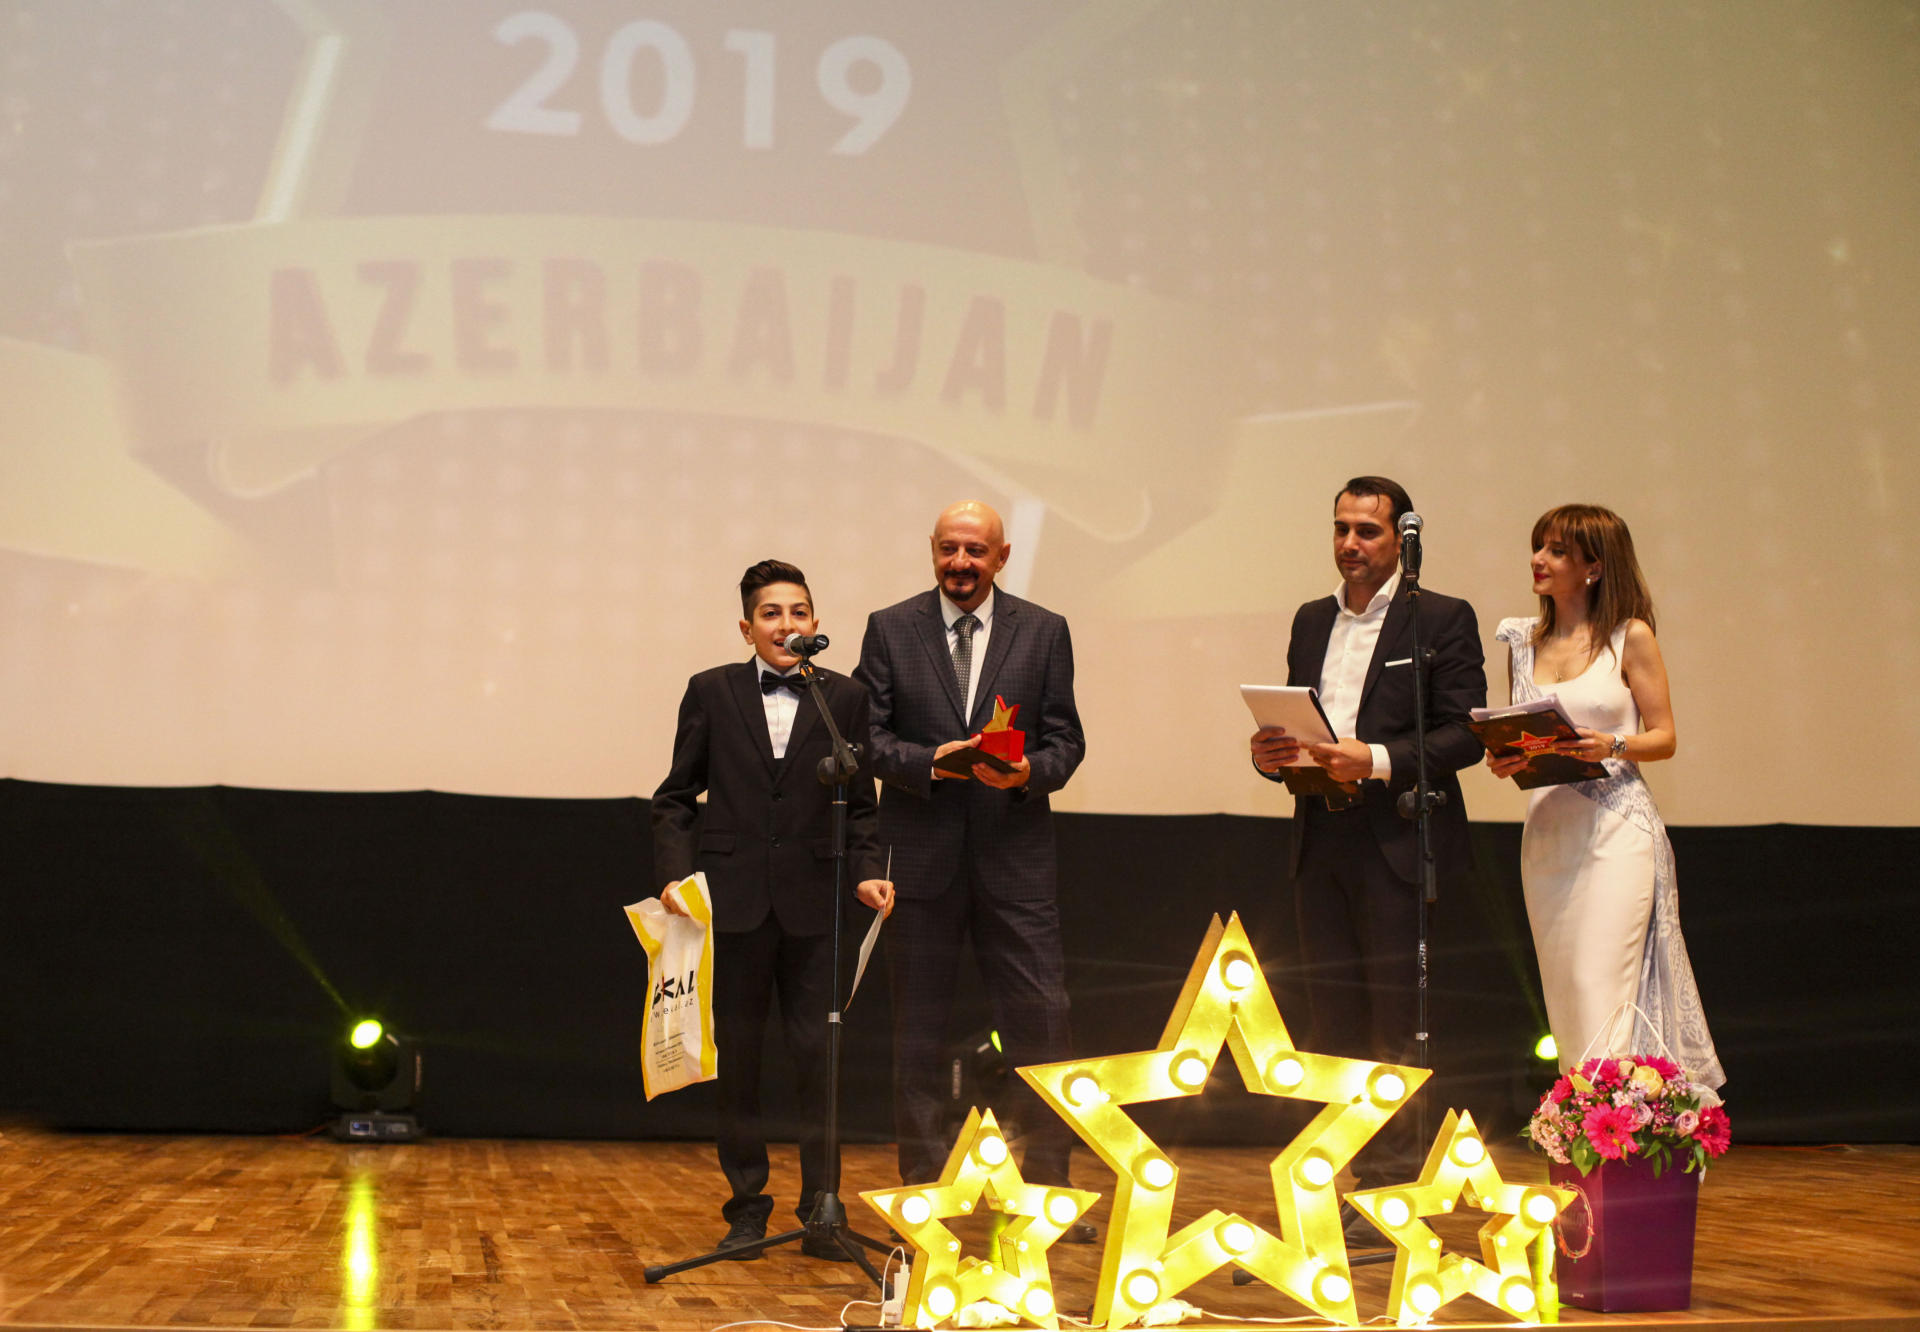 Определены "Золотые дети" Азербайджана - Azerbaijan Golden Kids Awards 2019 (ФОТО)